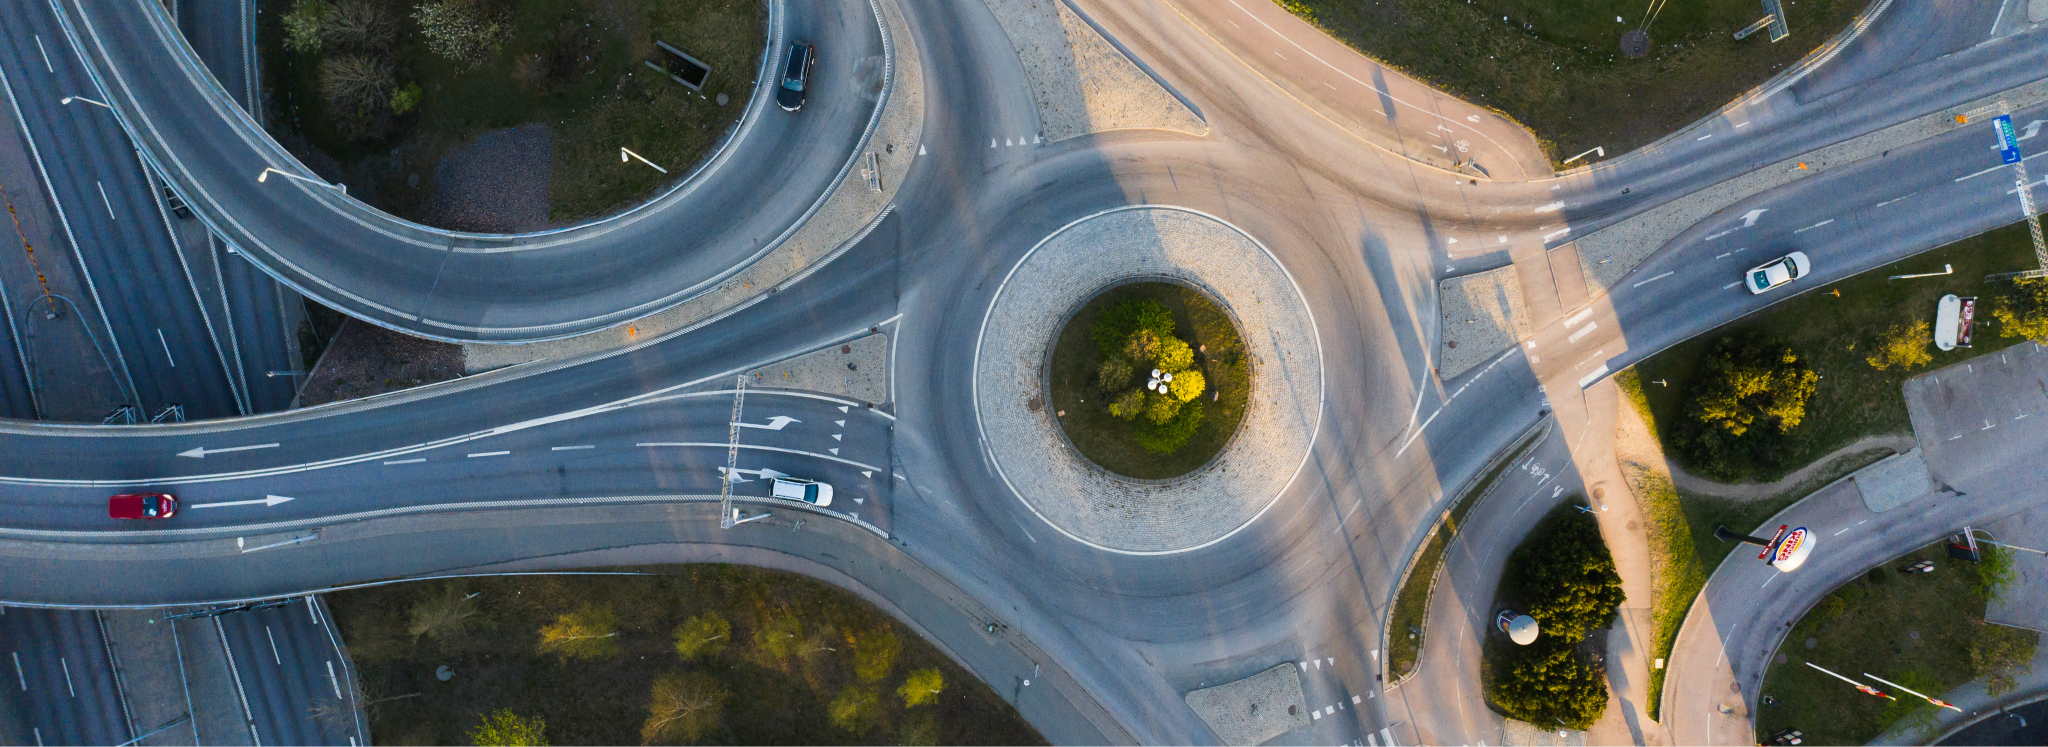 Svensk cirkulationsplats med bilar som åker igenom